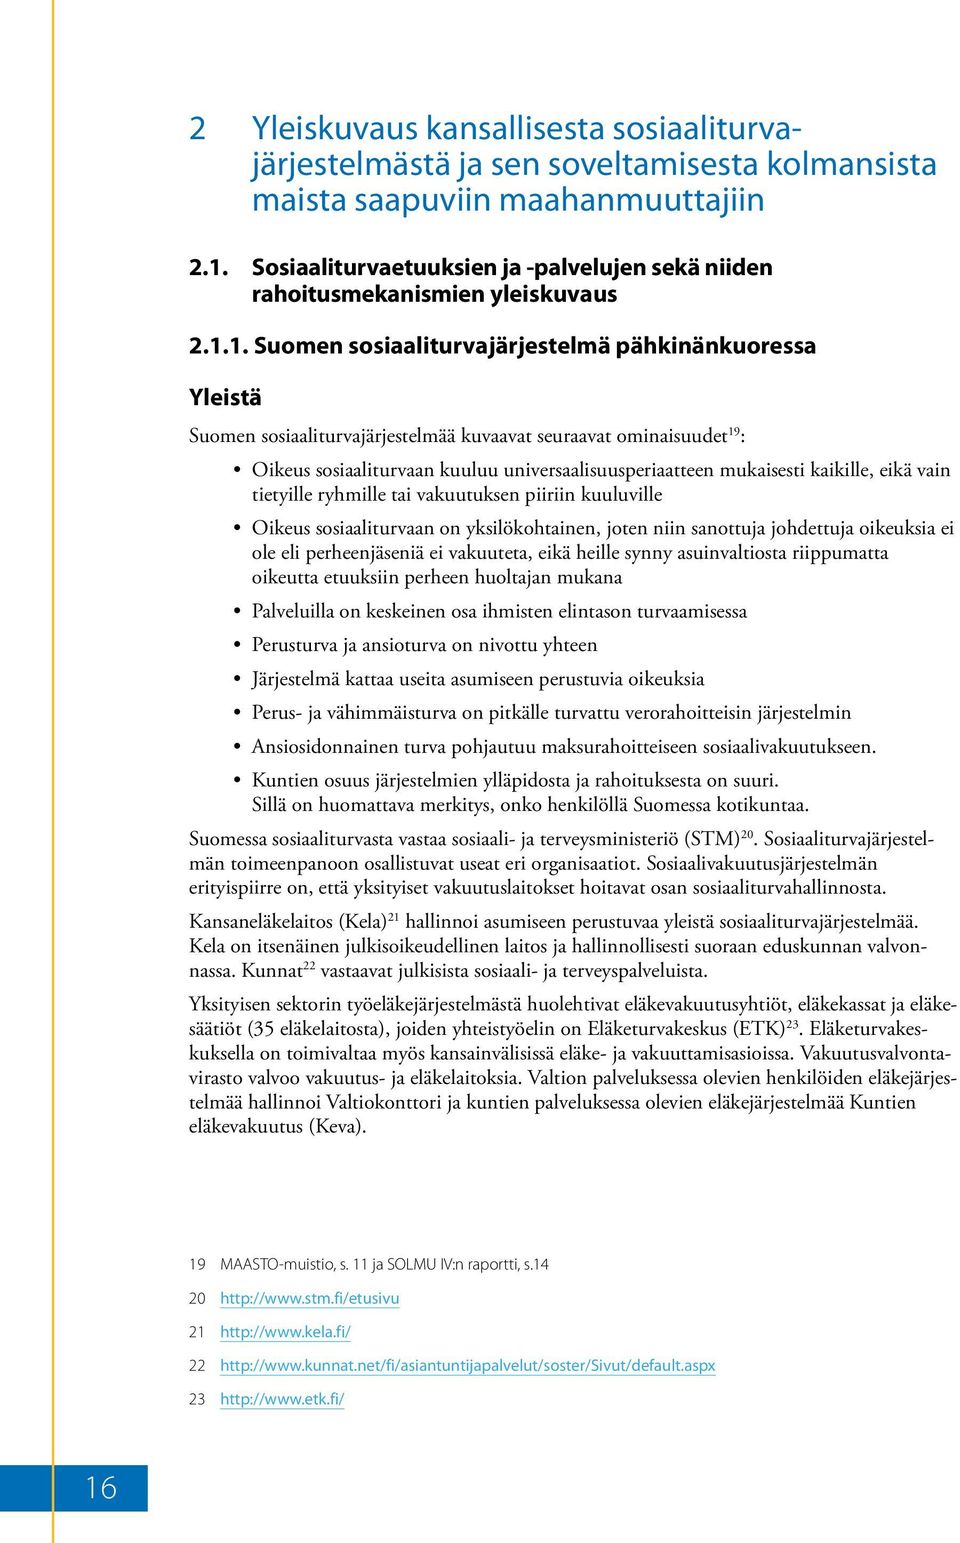 1. Suomen sosiaaliturvajärjestelmä pähkinänkuoressa Yleistä Suomen sosiaaliturvajärjestelmää kuvaavat seuraavat ominaisuudet 19 : Oikeus sosiaaliturvaan kuuluu universaalisuusperiaatteen mukaisesti